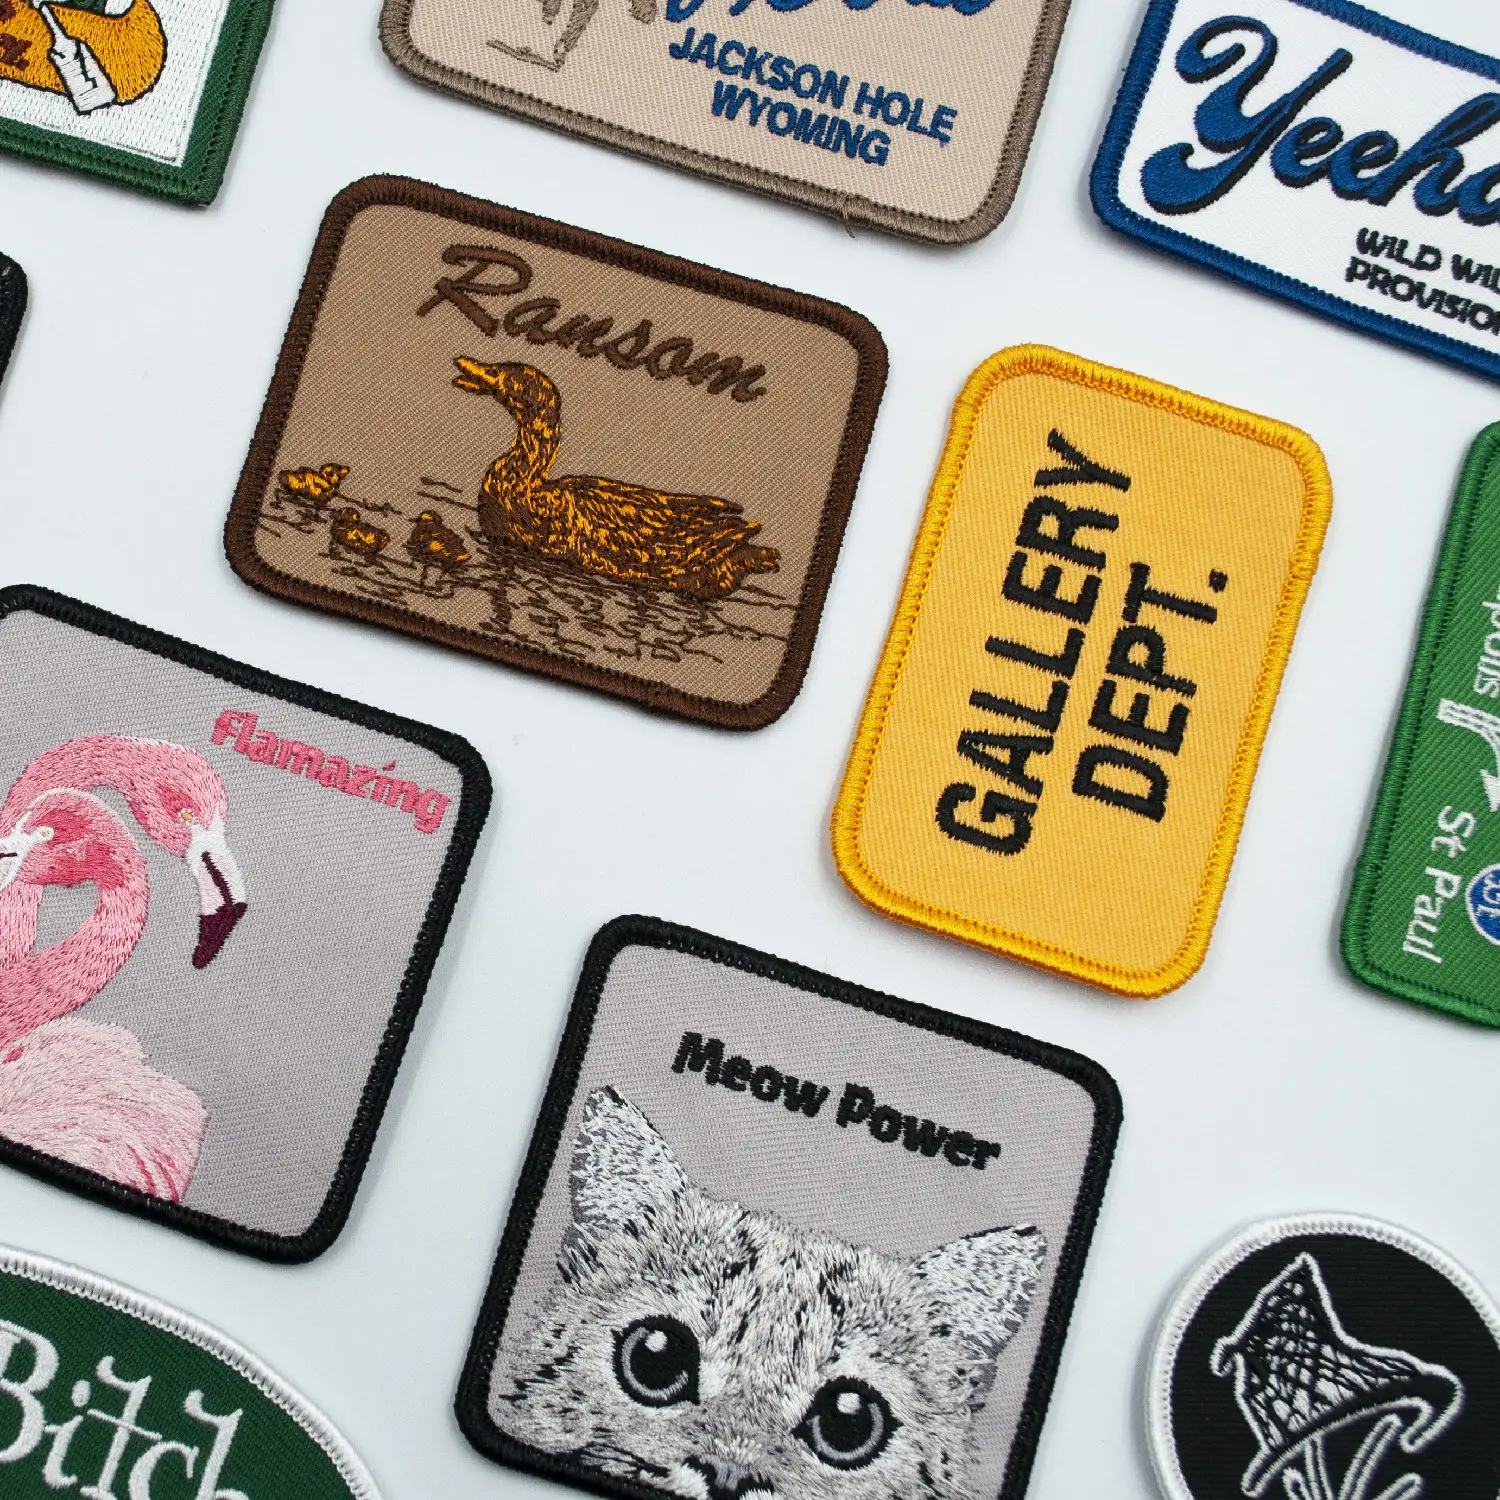 Großhandel benutzerdefinierte 3D-Marken-Name-Logo bügeln Stickerei-Patches und -Auszeichnungen für Kleidung